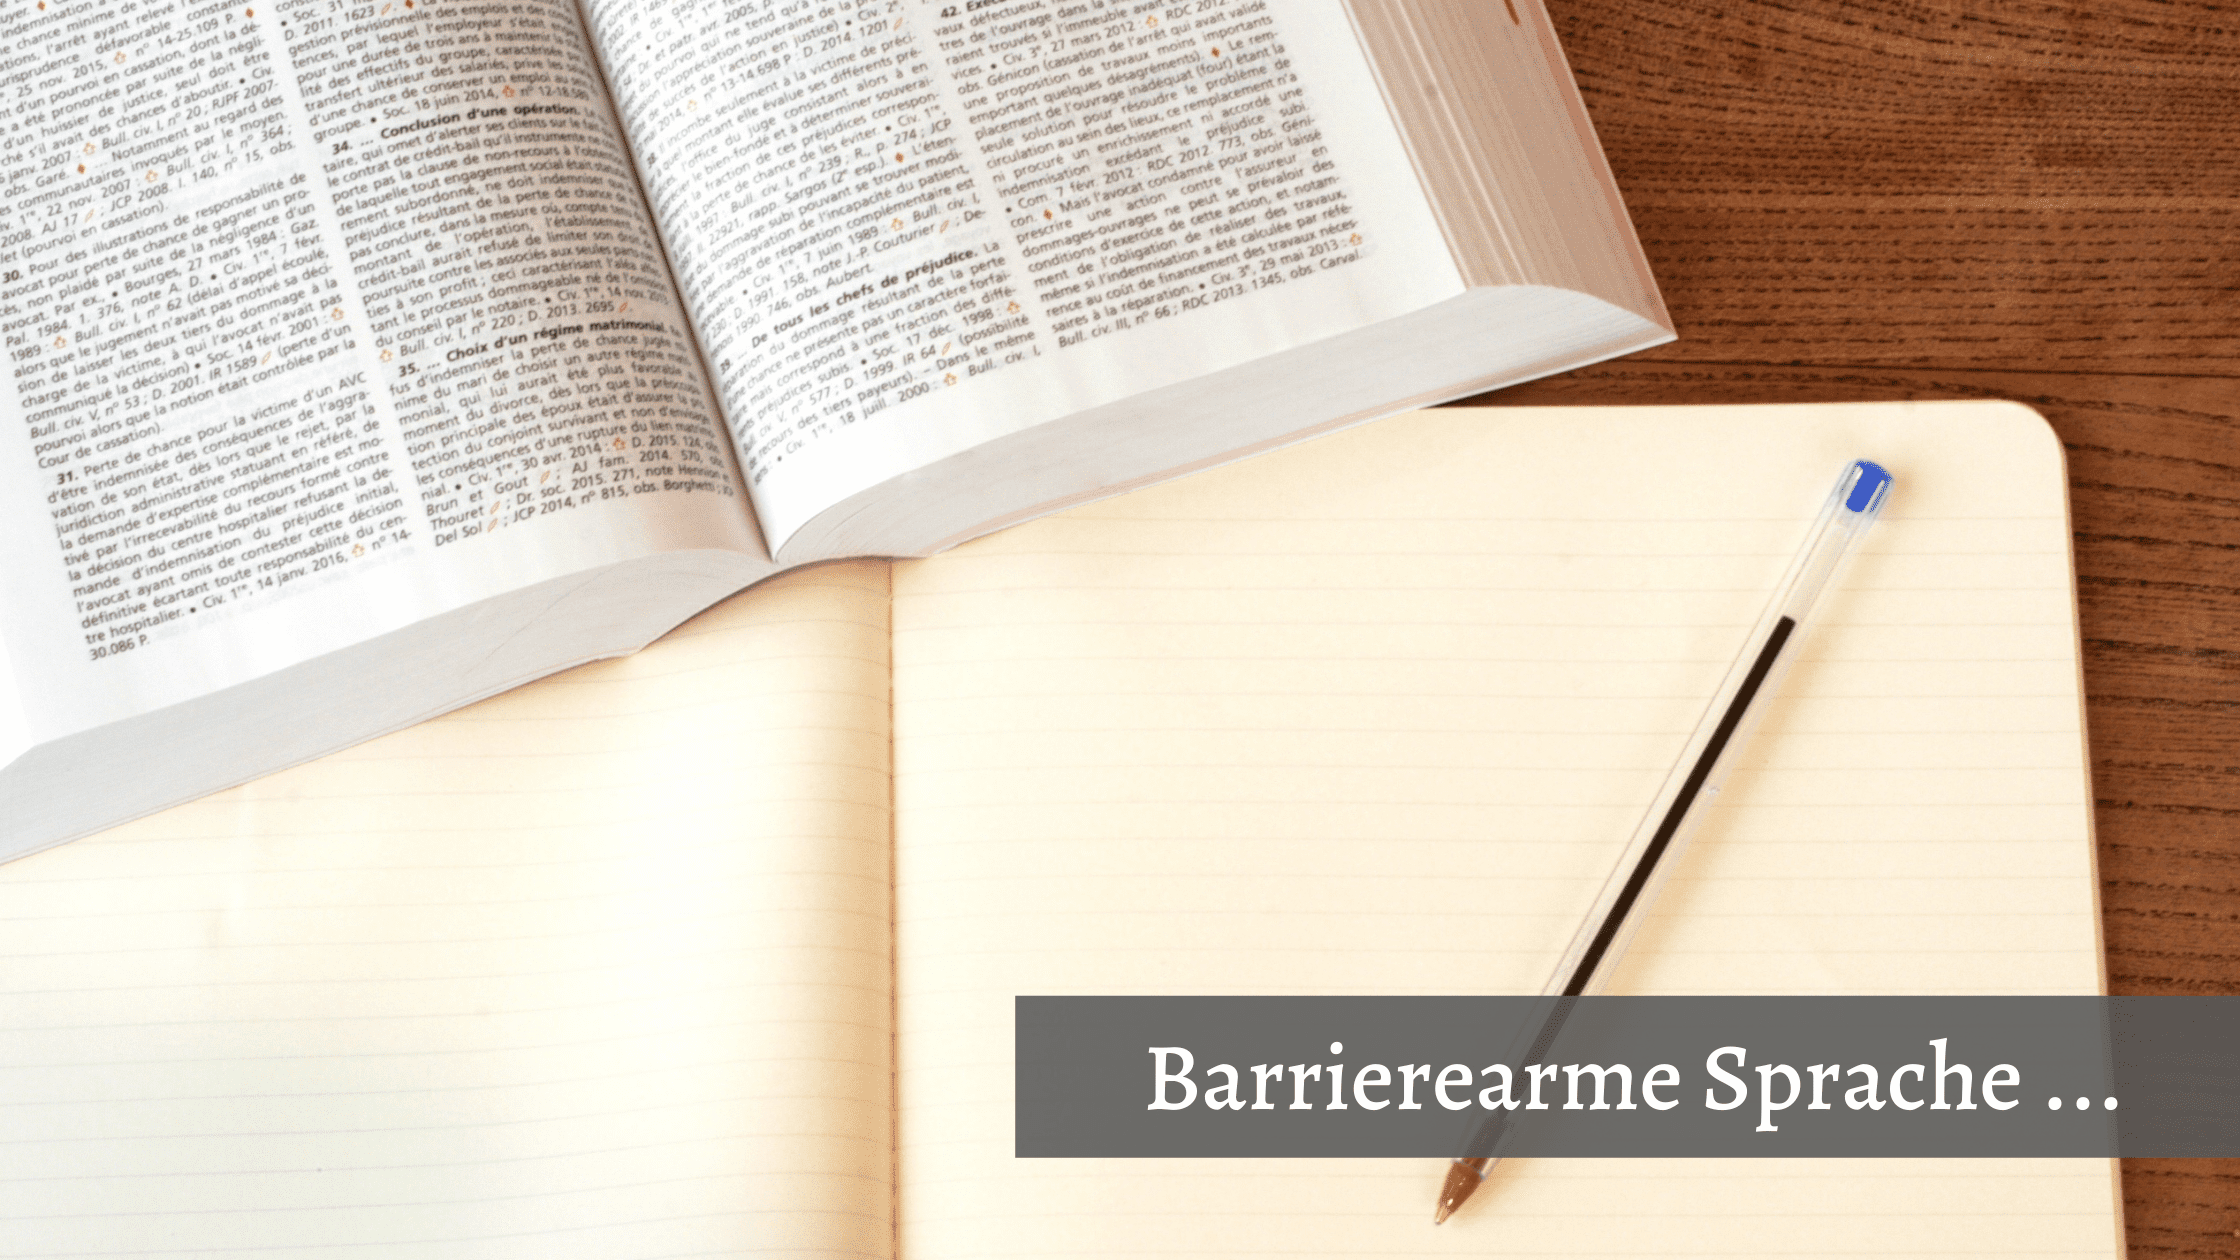 Was sind die Regeln einer barrierearmen Sprache? Foto: Ein Schreibblock, ein Stift und ein Wörterbuch liegen auf einem Tisch. Bildtext: Barrierearme Sprache